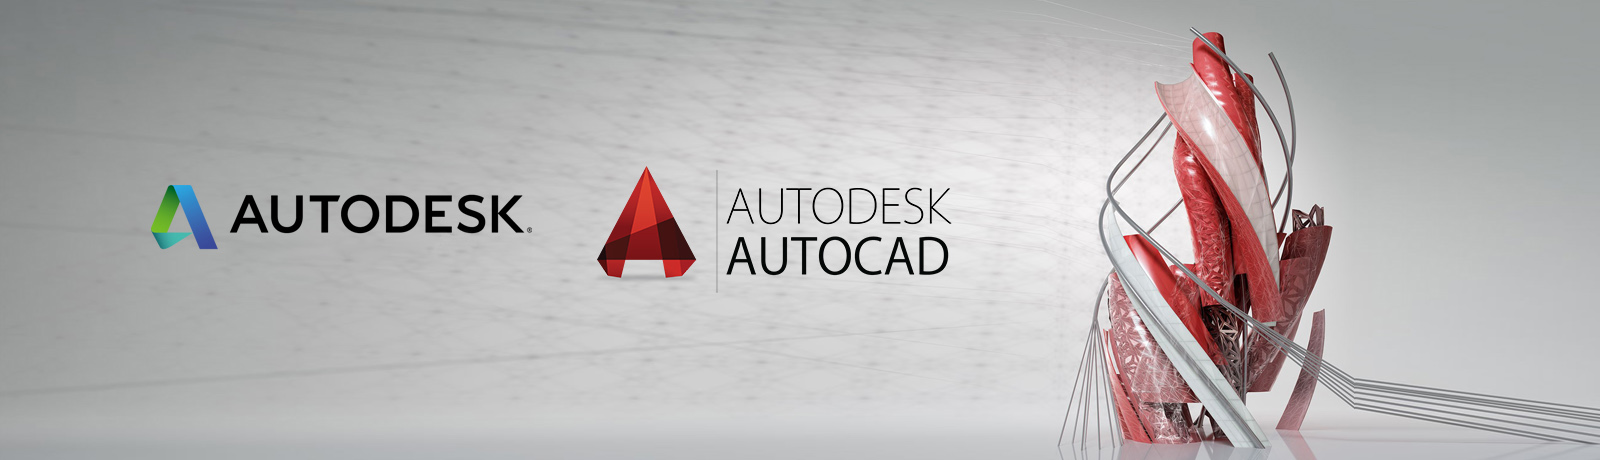 autocad-new-slider-1